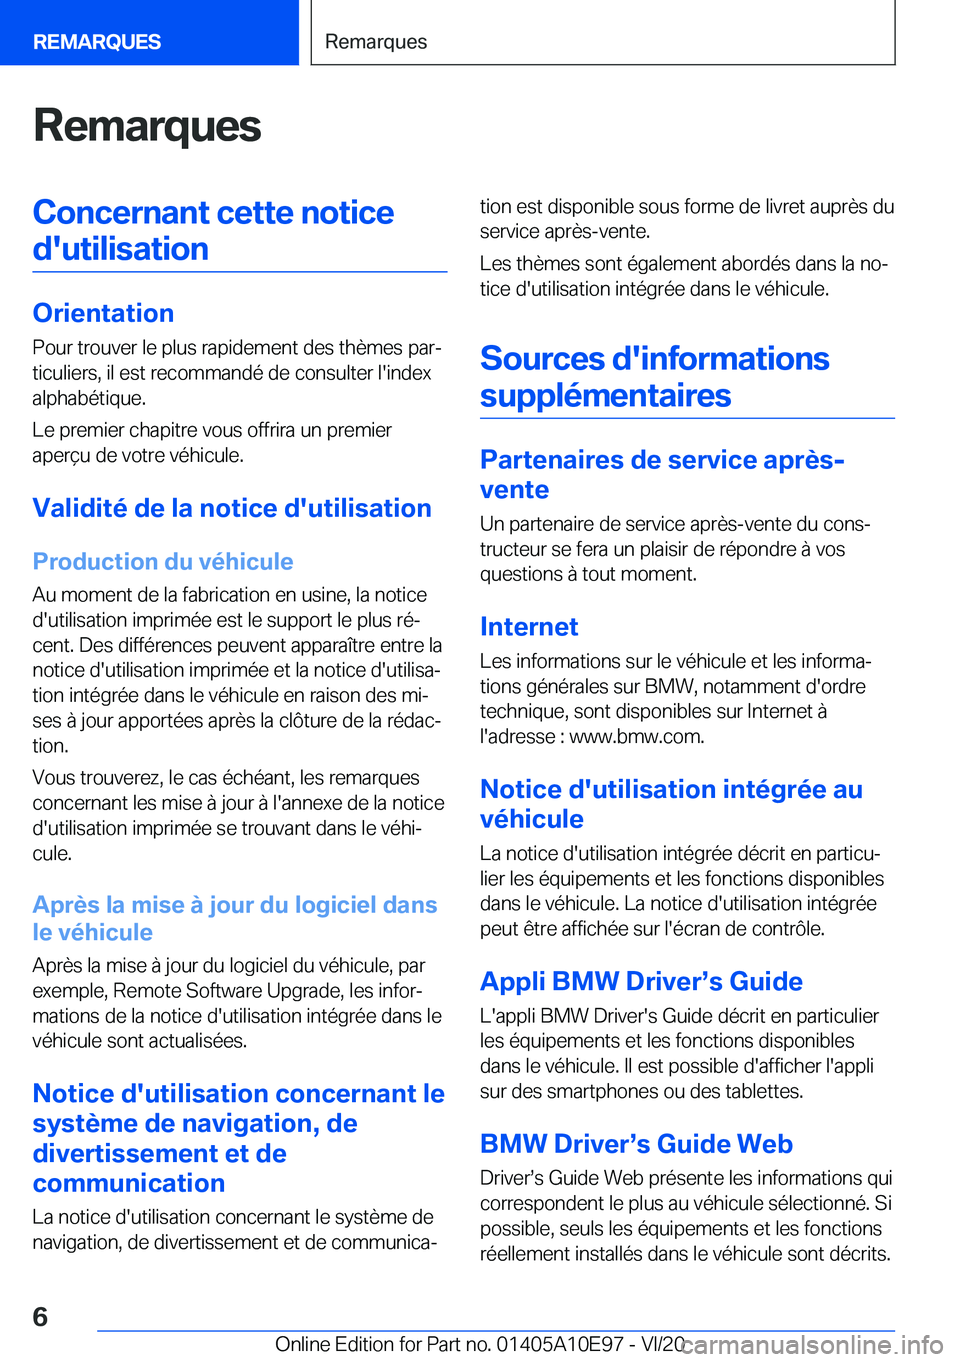 BMW X3 2021  Notices Demploi (in French) �R�e�m�a�r�q�u�e�s�C�o�n�c�e�r�n�a�n�t��c�e�t�t�e��n�o�t�i�c�e�d�'�u�t�i�l�i�s�a�t�i�o�n
�O�r�i�e�n�t�a�t�i�o�n �P�o�u�r��t�r�o�u�v�e�r��l�e��p�l�u�s��r�a�p�i�d�e�m�e�n�t��d�e�s��t�h�è�m�